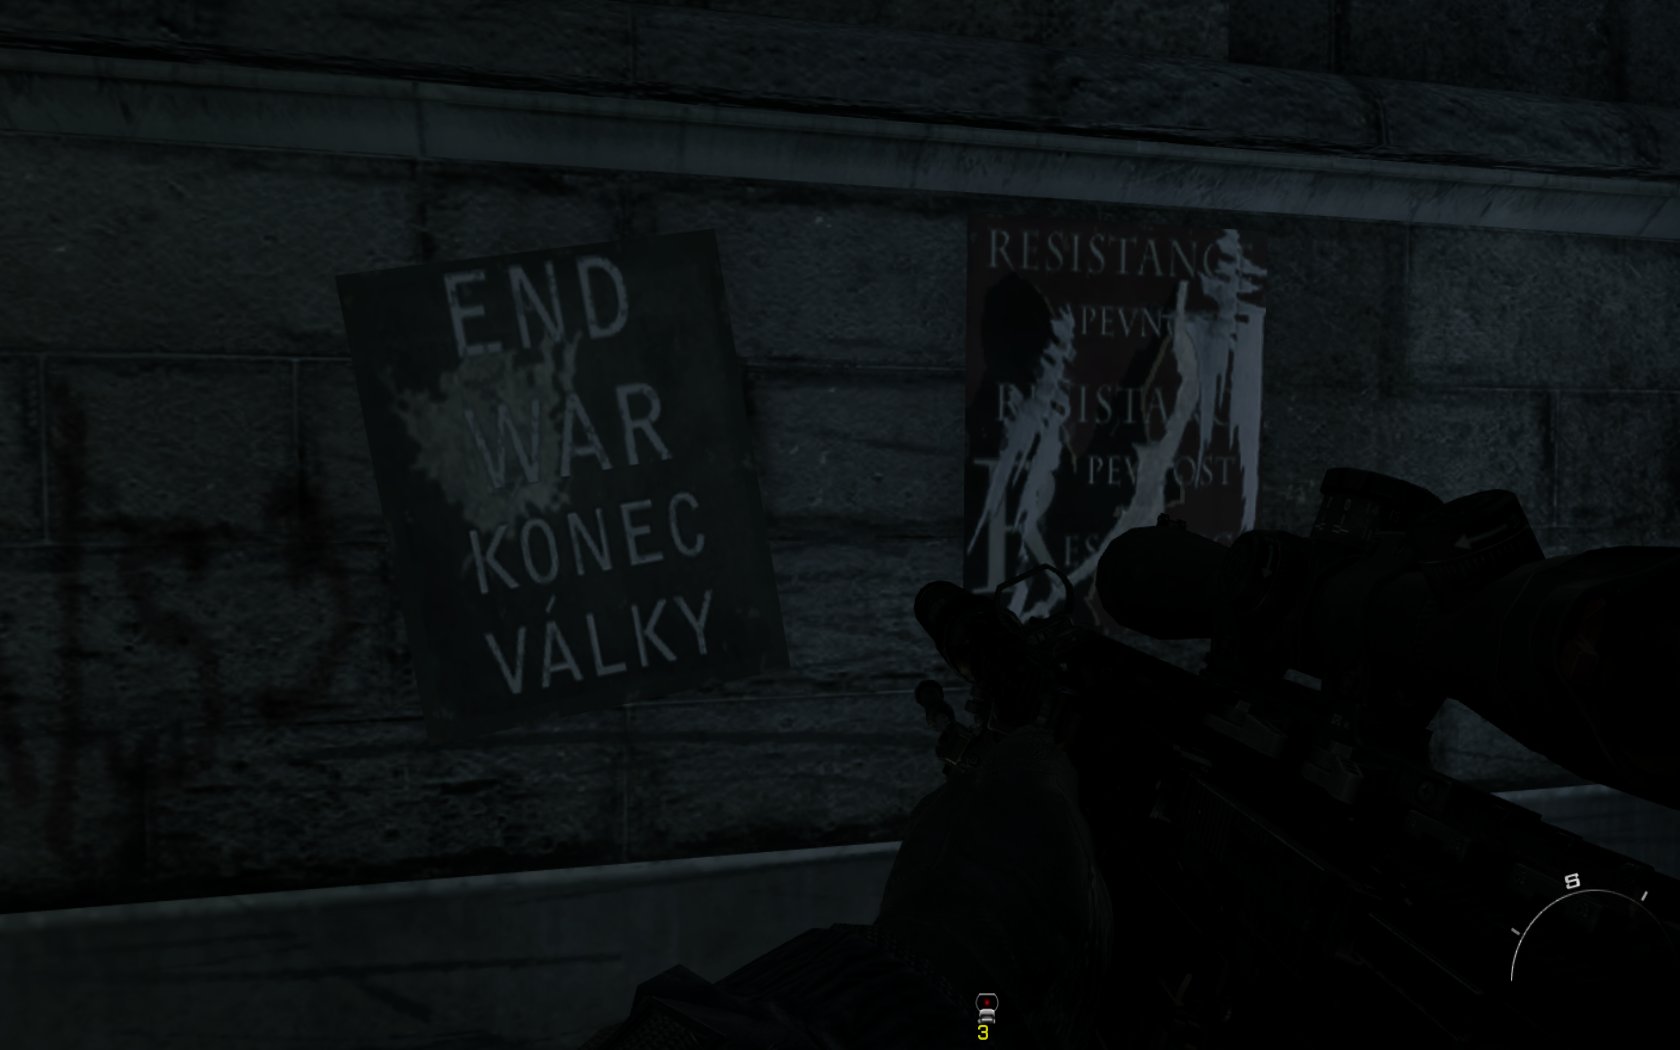 Call of Duty Modern Warfare 3 Konec vlky! Pozitvne heslo v uliciach Prahy.